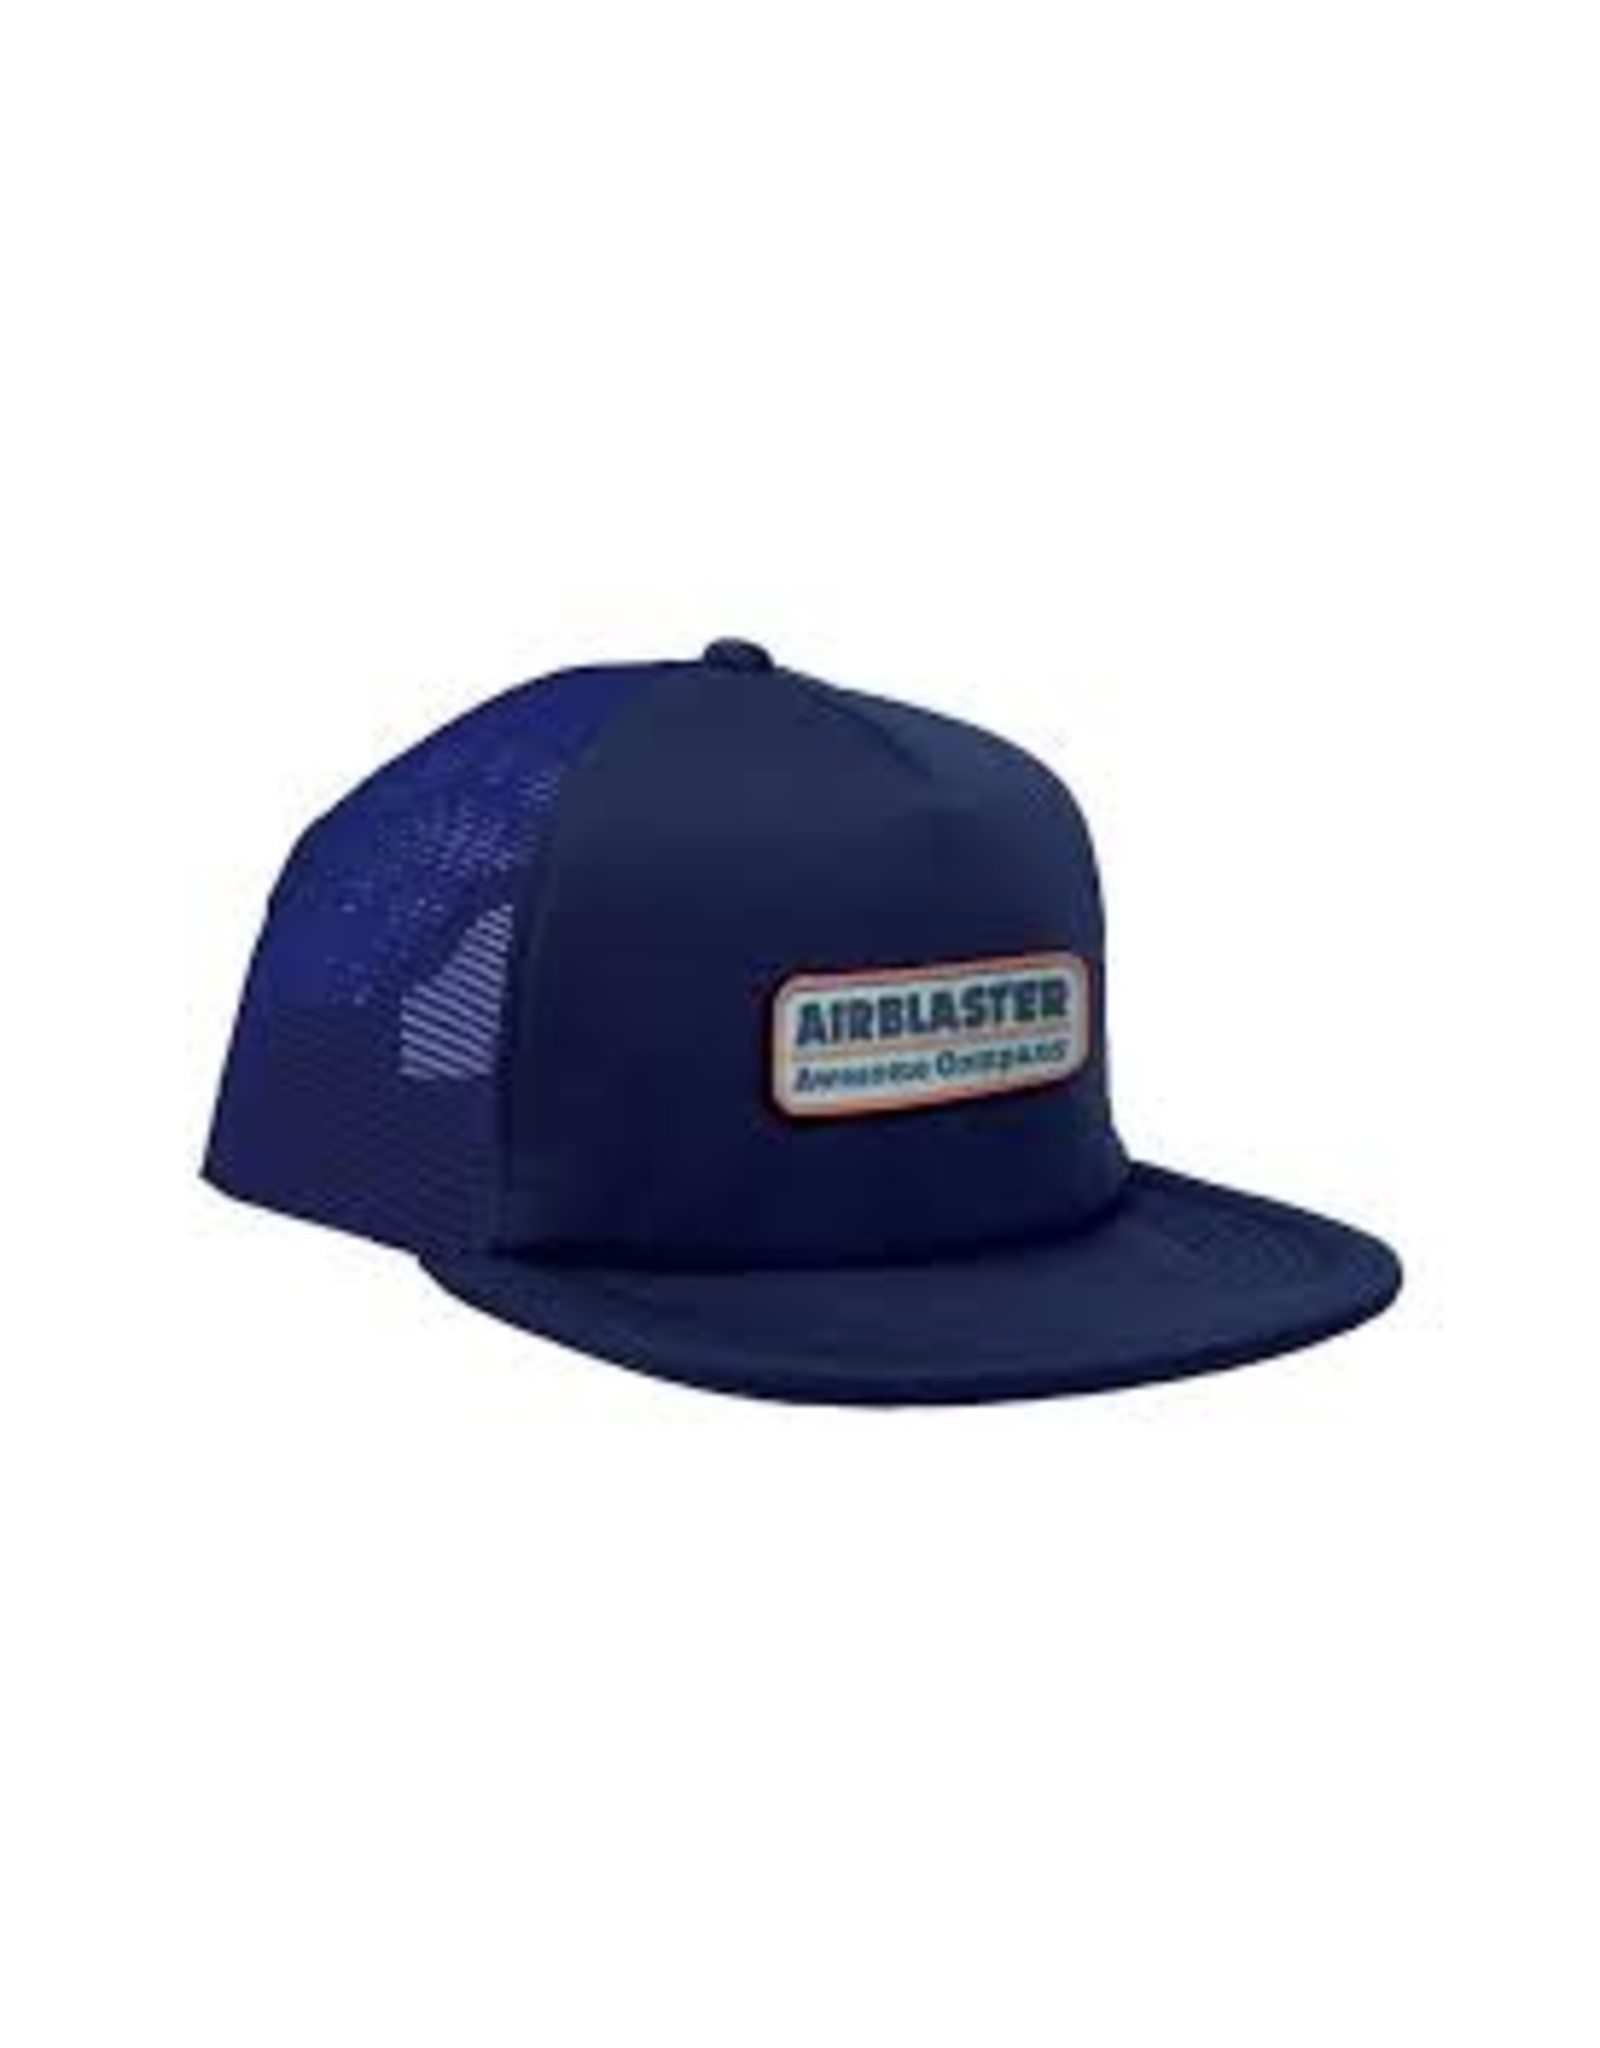 AIRBLASTER Gas Station Trucker Hat